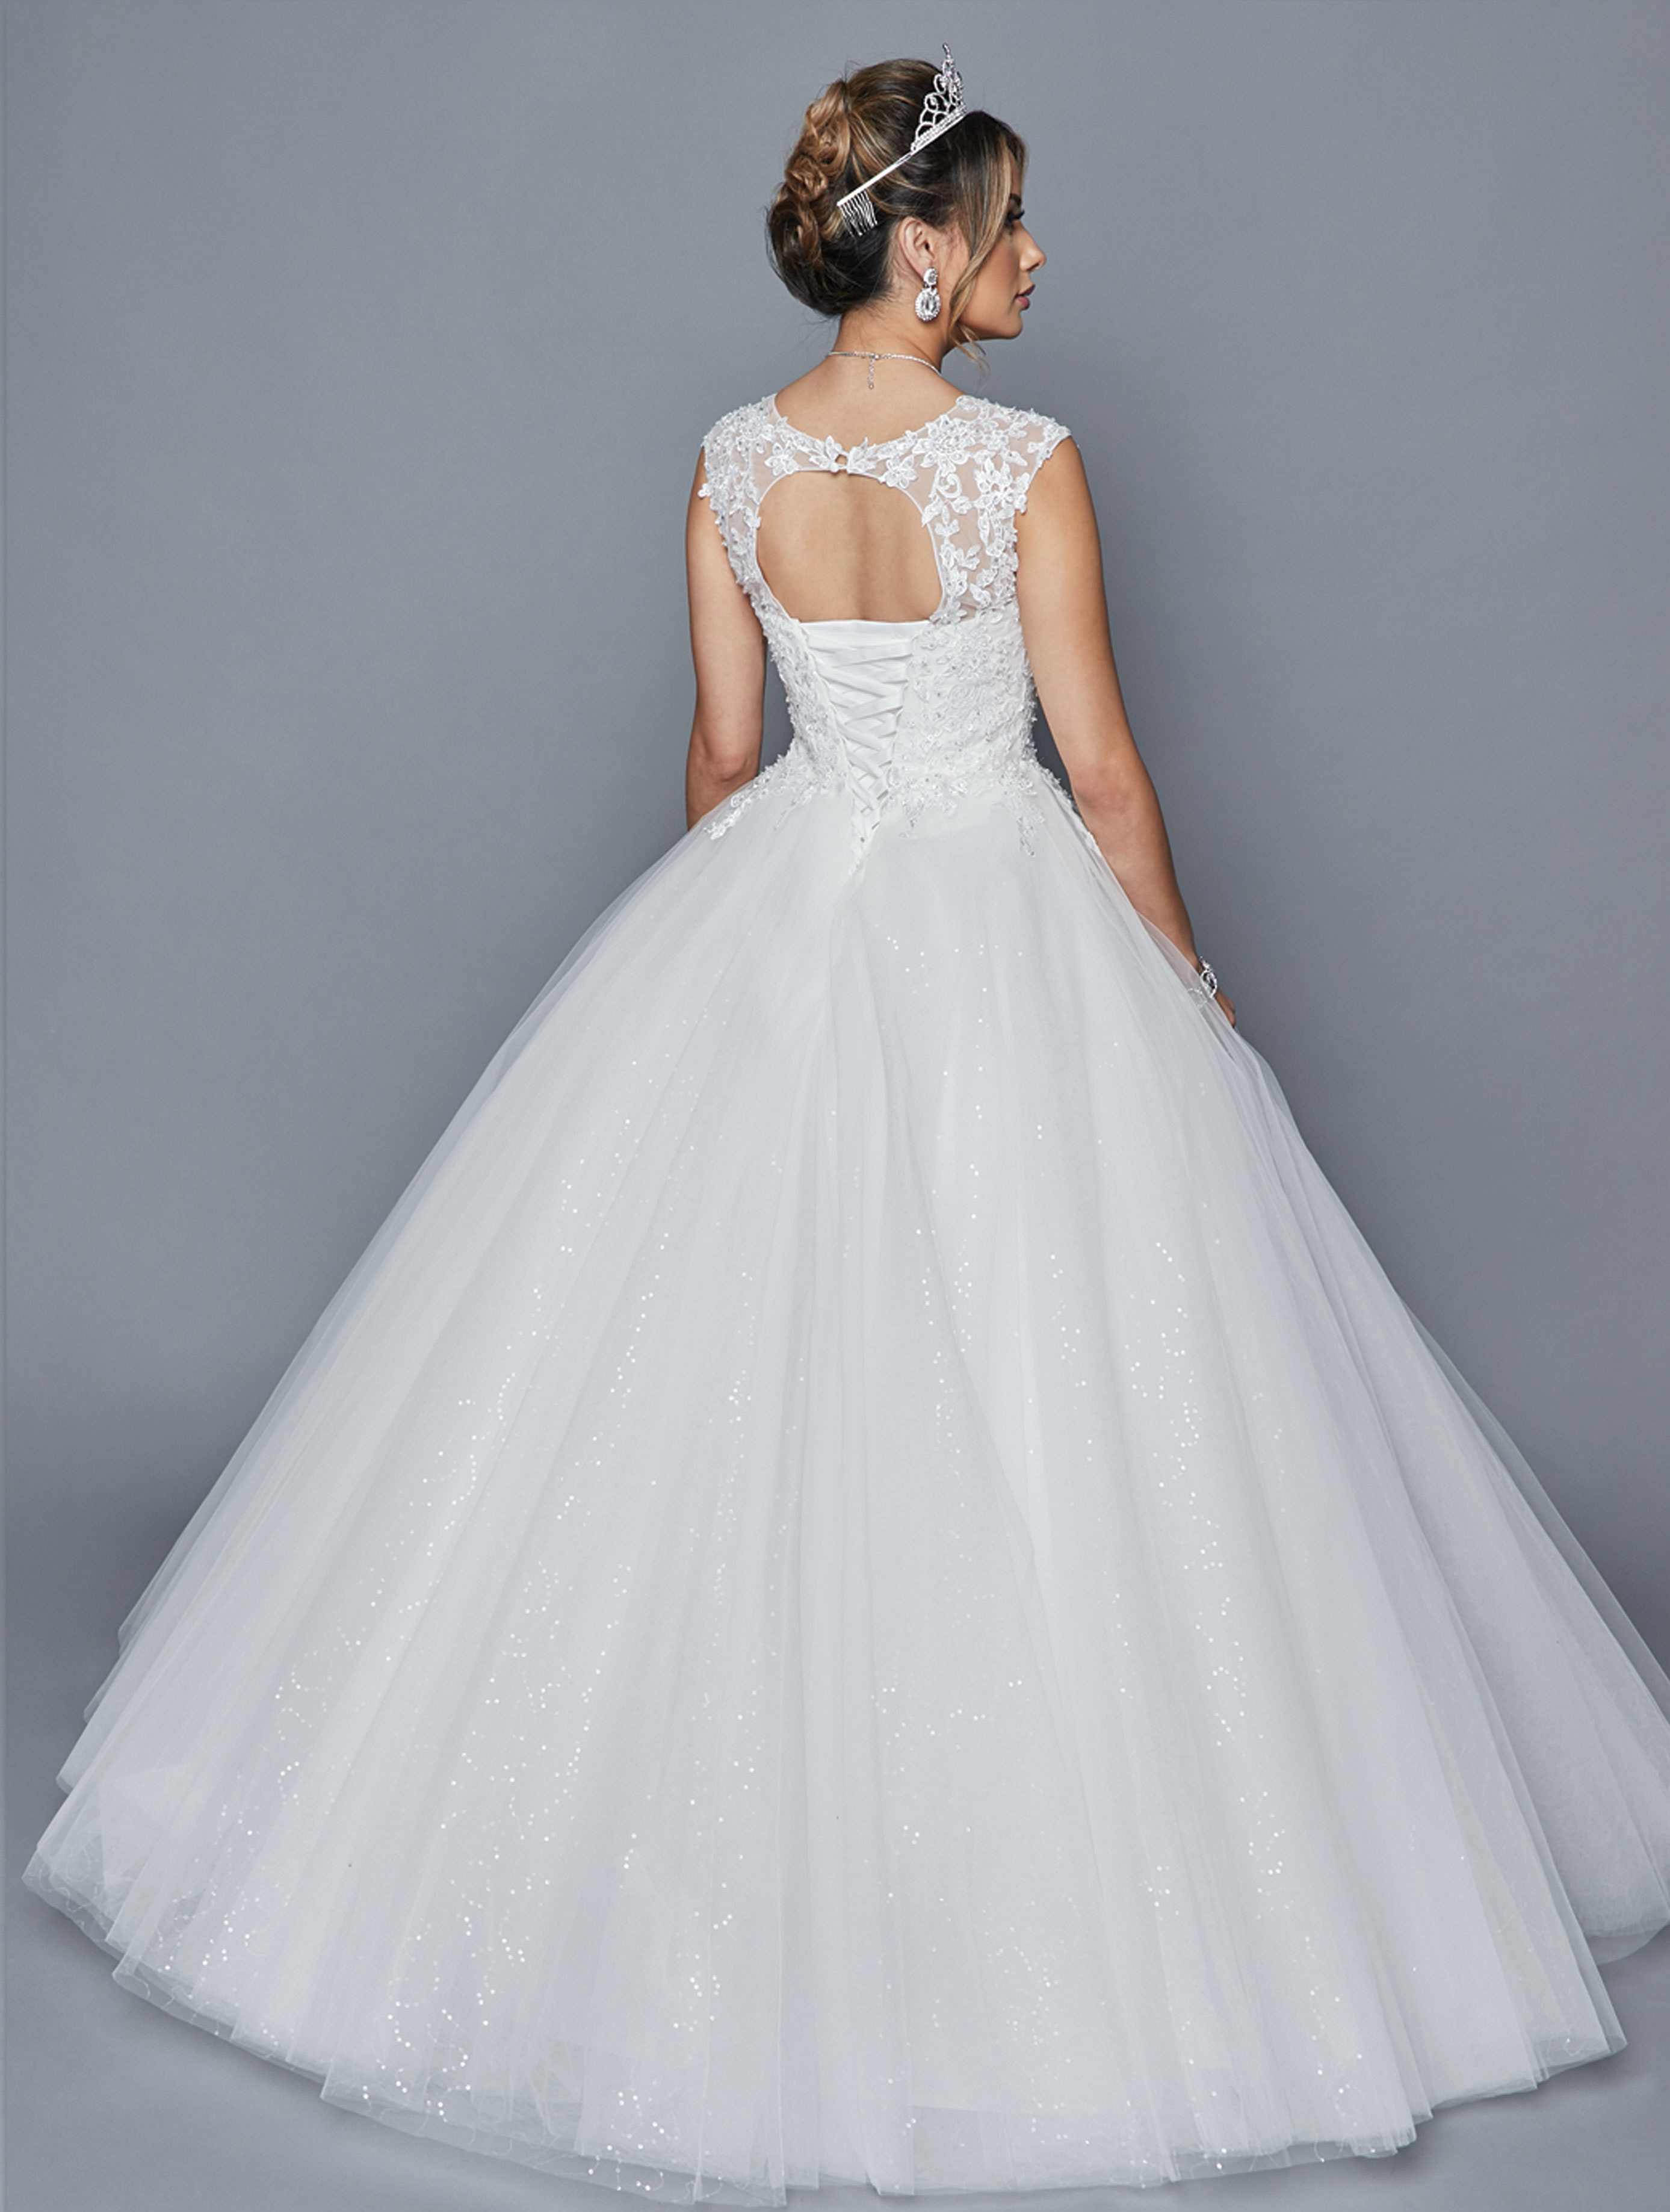 DeKlaire Bridal 413 Dress